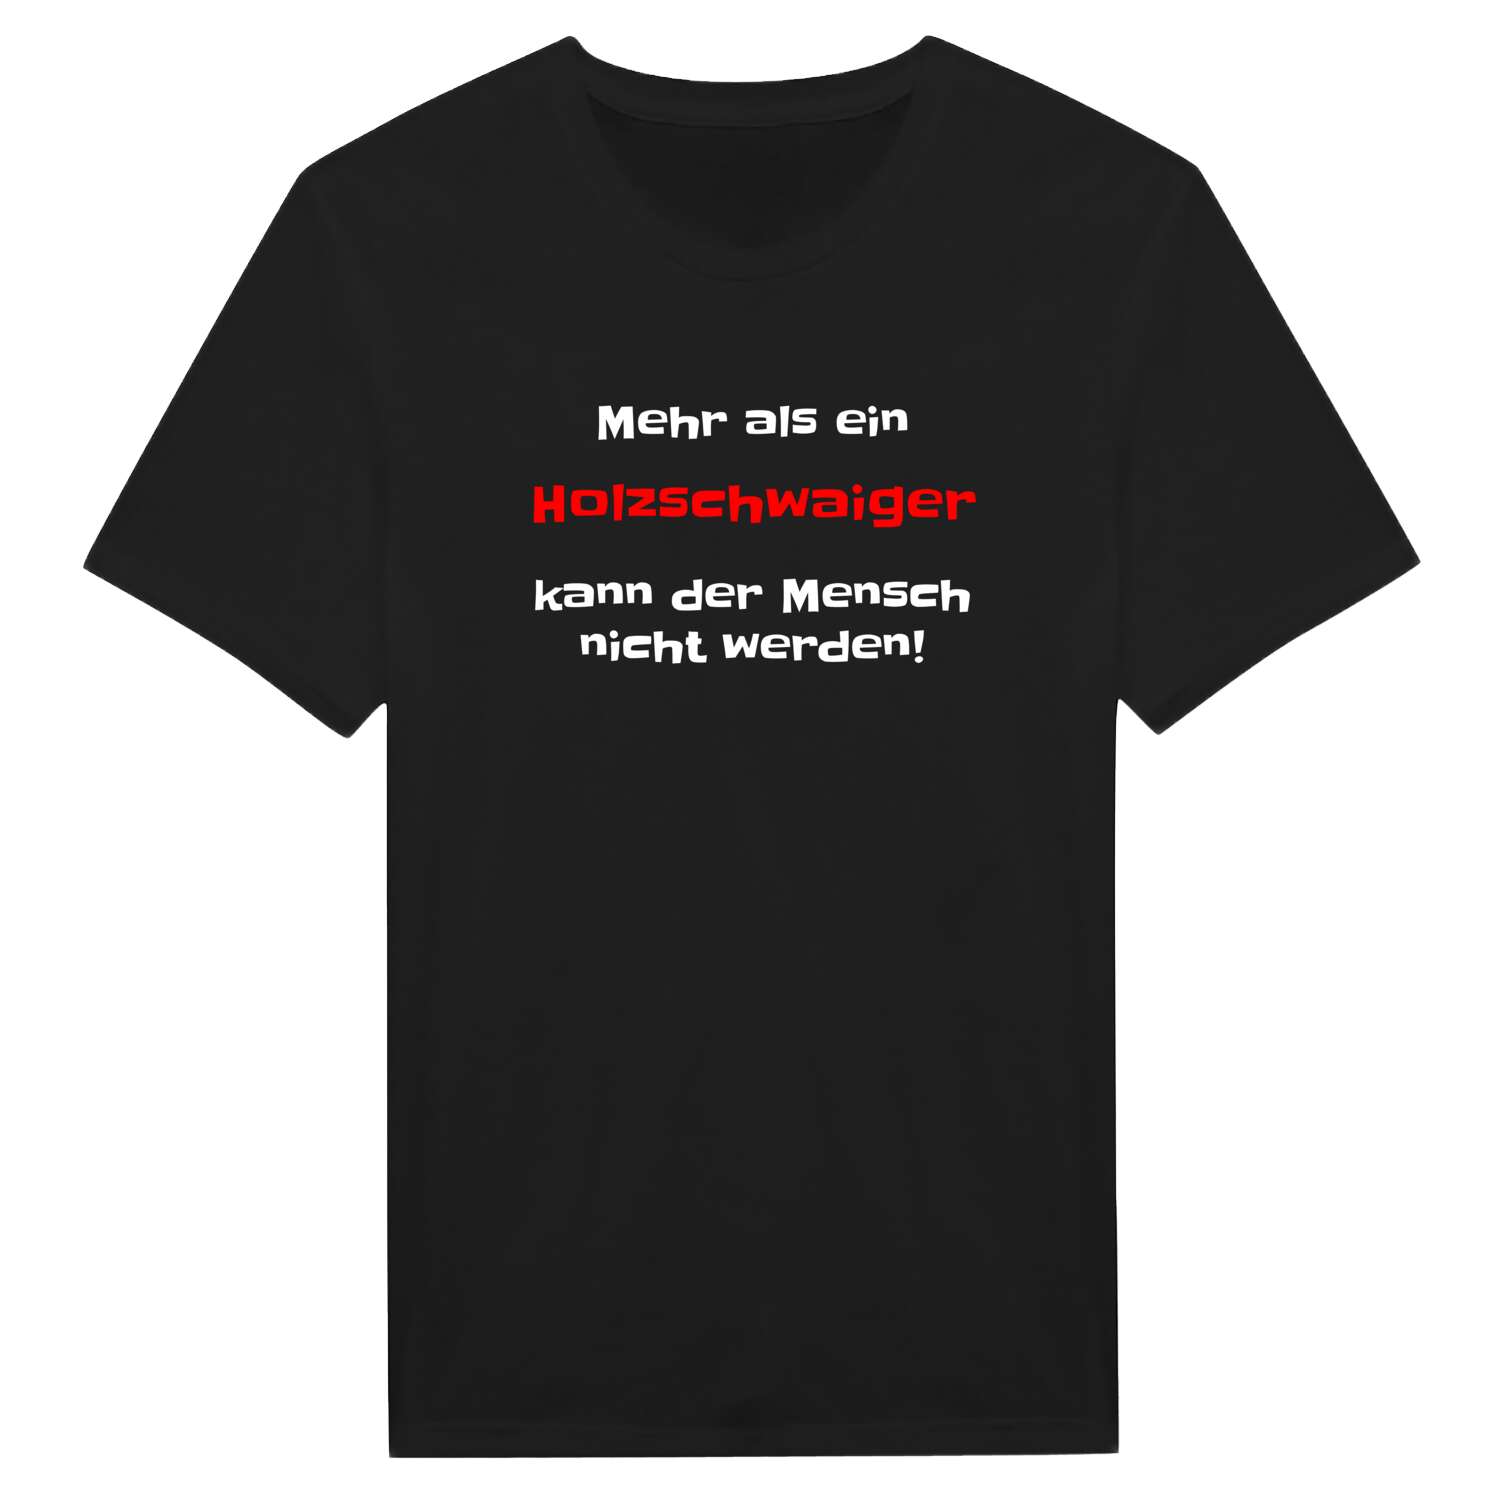 Holzschwaig T-Shirt »Mehr als ein«